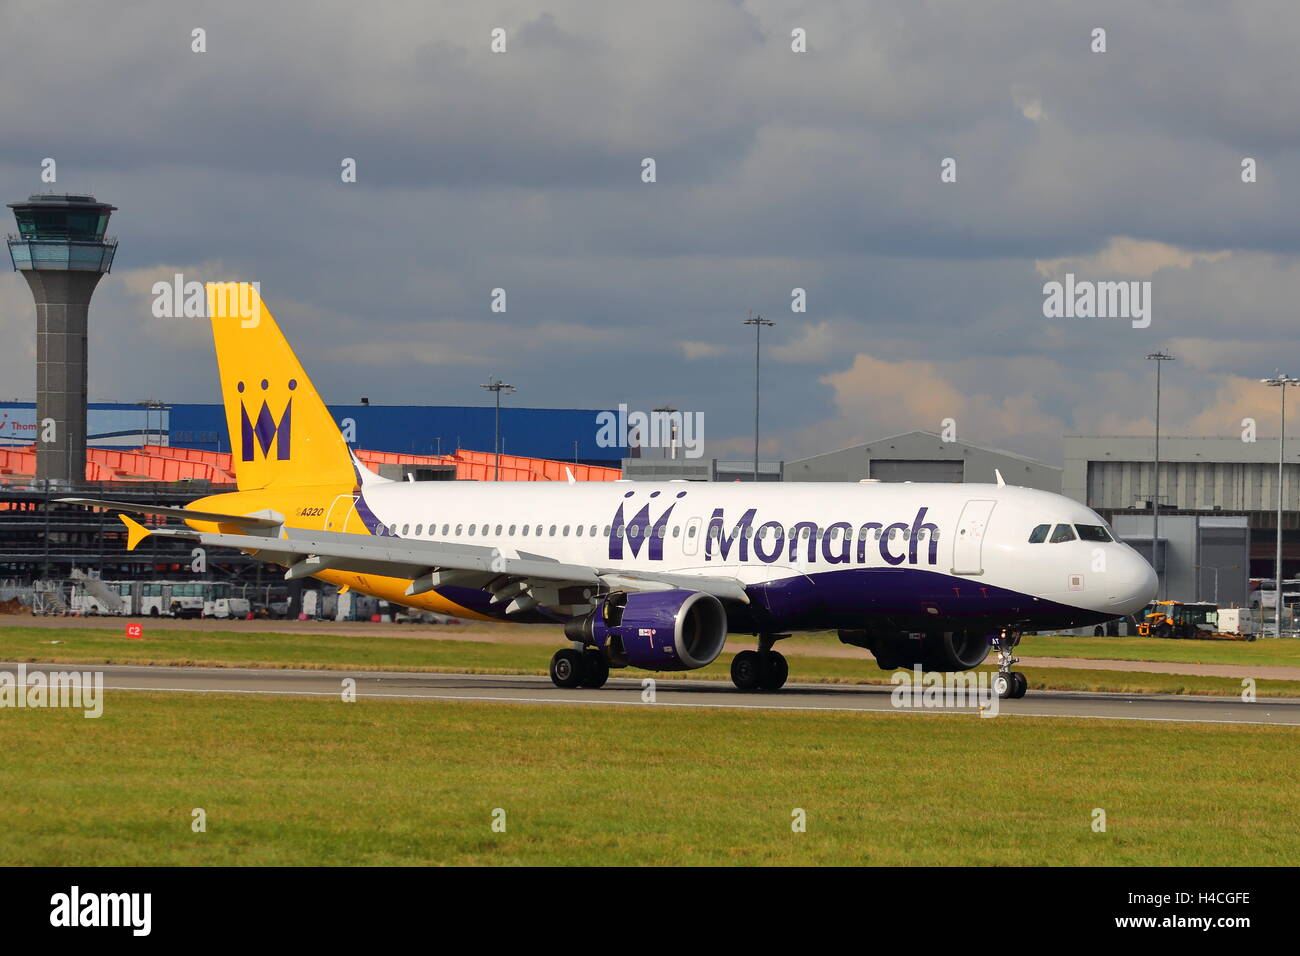 La Monarch Airlines Airbus A320-200 G-ZBAT arrivando all'Aeroporto London Luton, Regno Unito Foto Stock